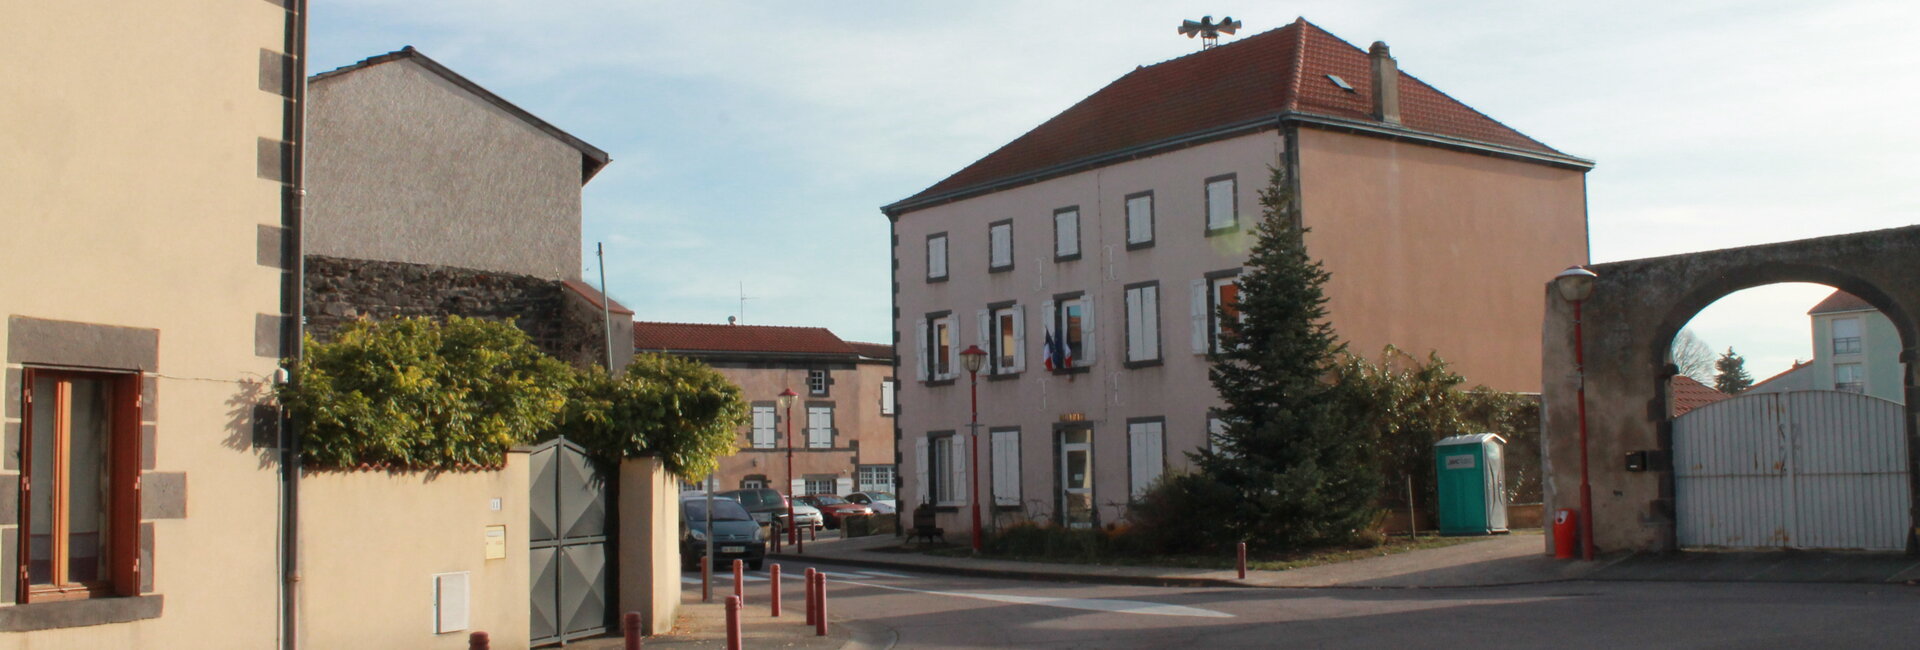 Contacter la mairie de Ménétrol dans le Puy-de-Dôme (63)